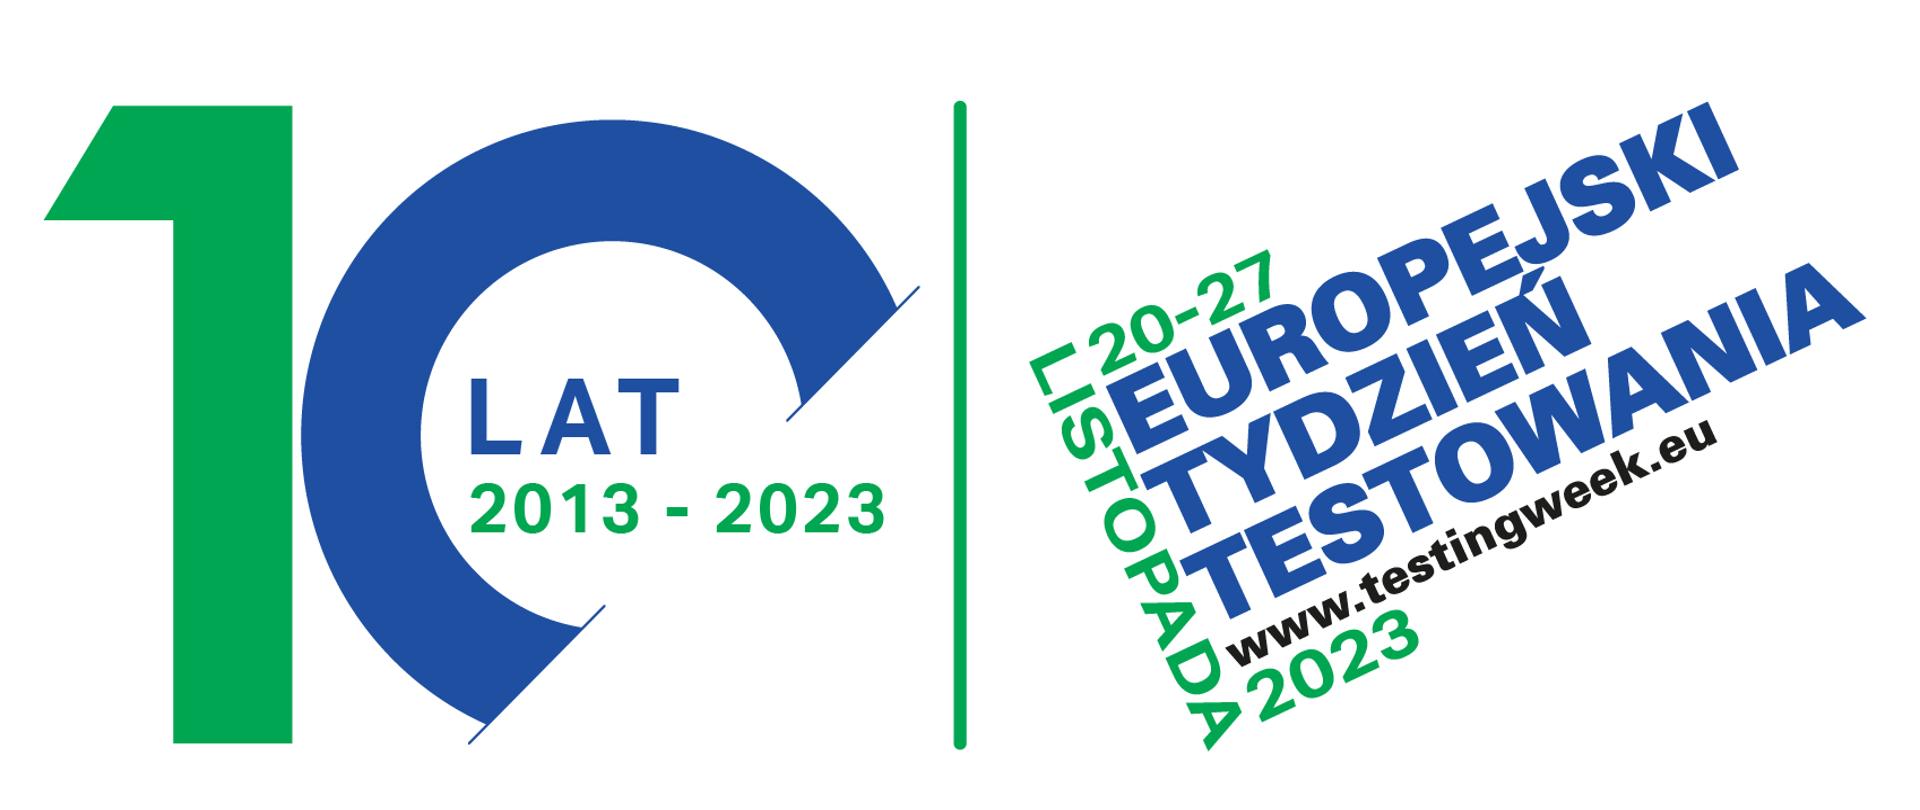 białe tło, liczba 10 po lewej stronie, w cyfrę 0 wpisane słowo lat i zakres 2013-2023, obraz przedzielony zieloną pionową kreską, a po prawej stronie logotyp utworzony ze słów i cyfr - Europejski Tydzień Testowania 20-27 listopada 2023